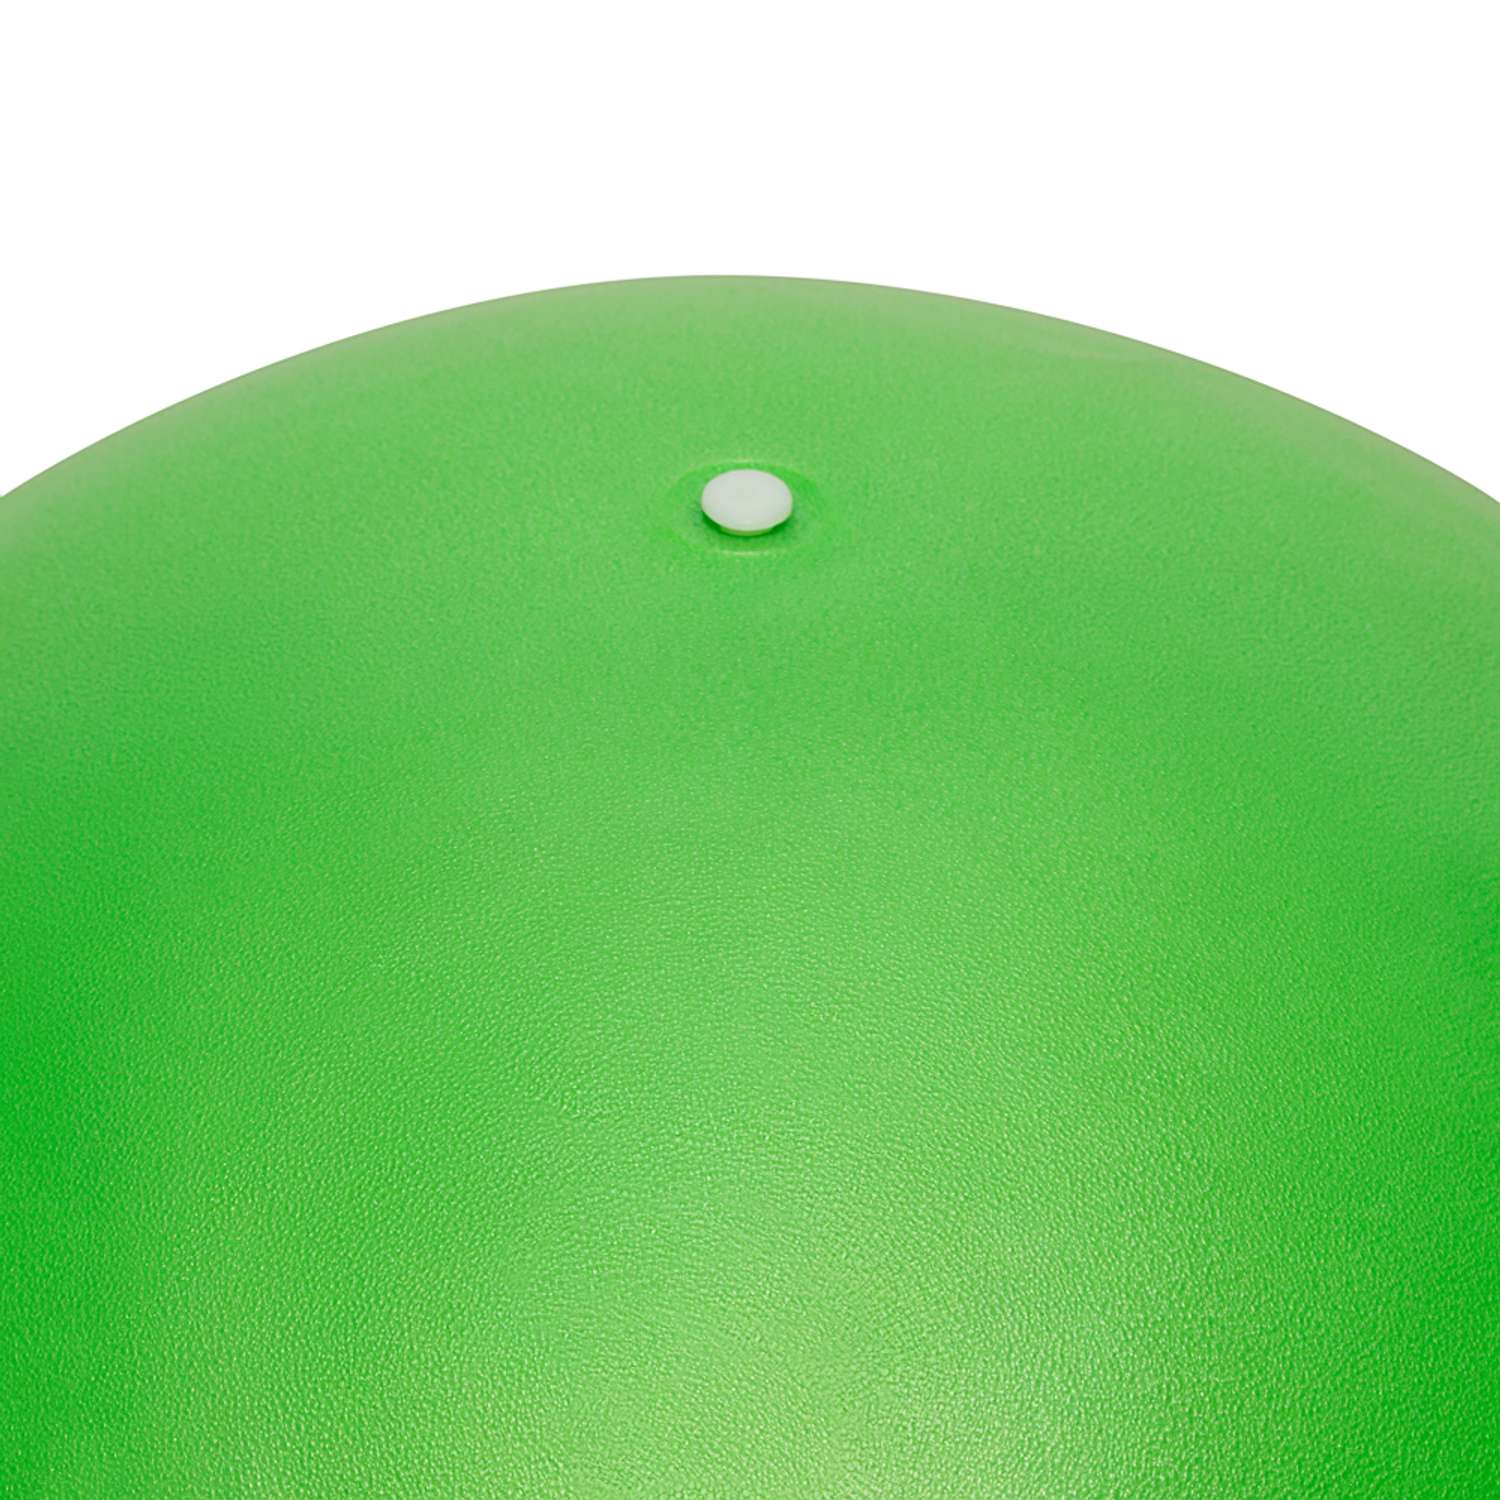 Фитбол STRONG BODY 65 см ABS антивзрыв зеленый для фитнеса Насос в комплекте - фото 3